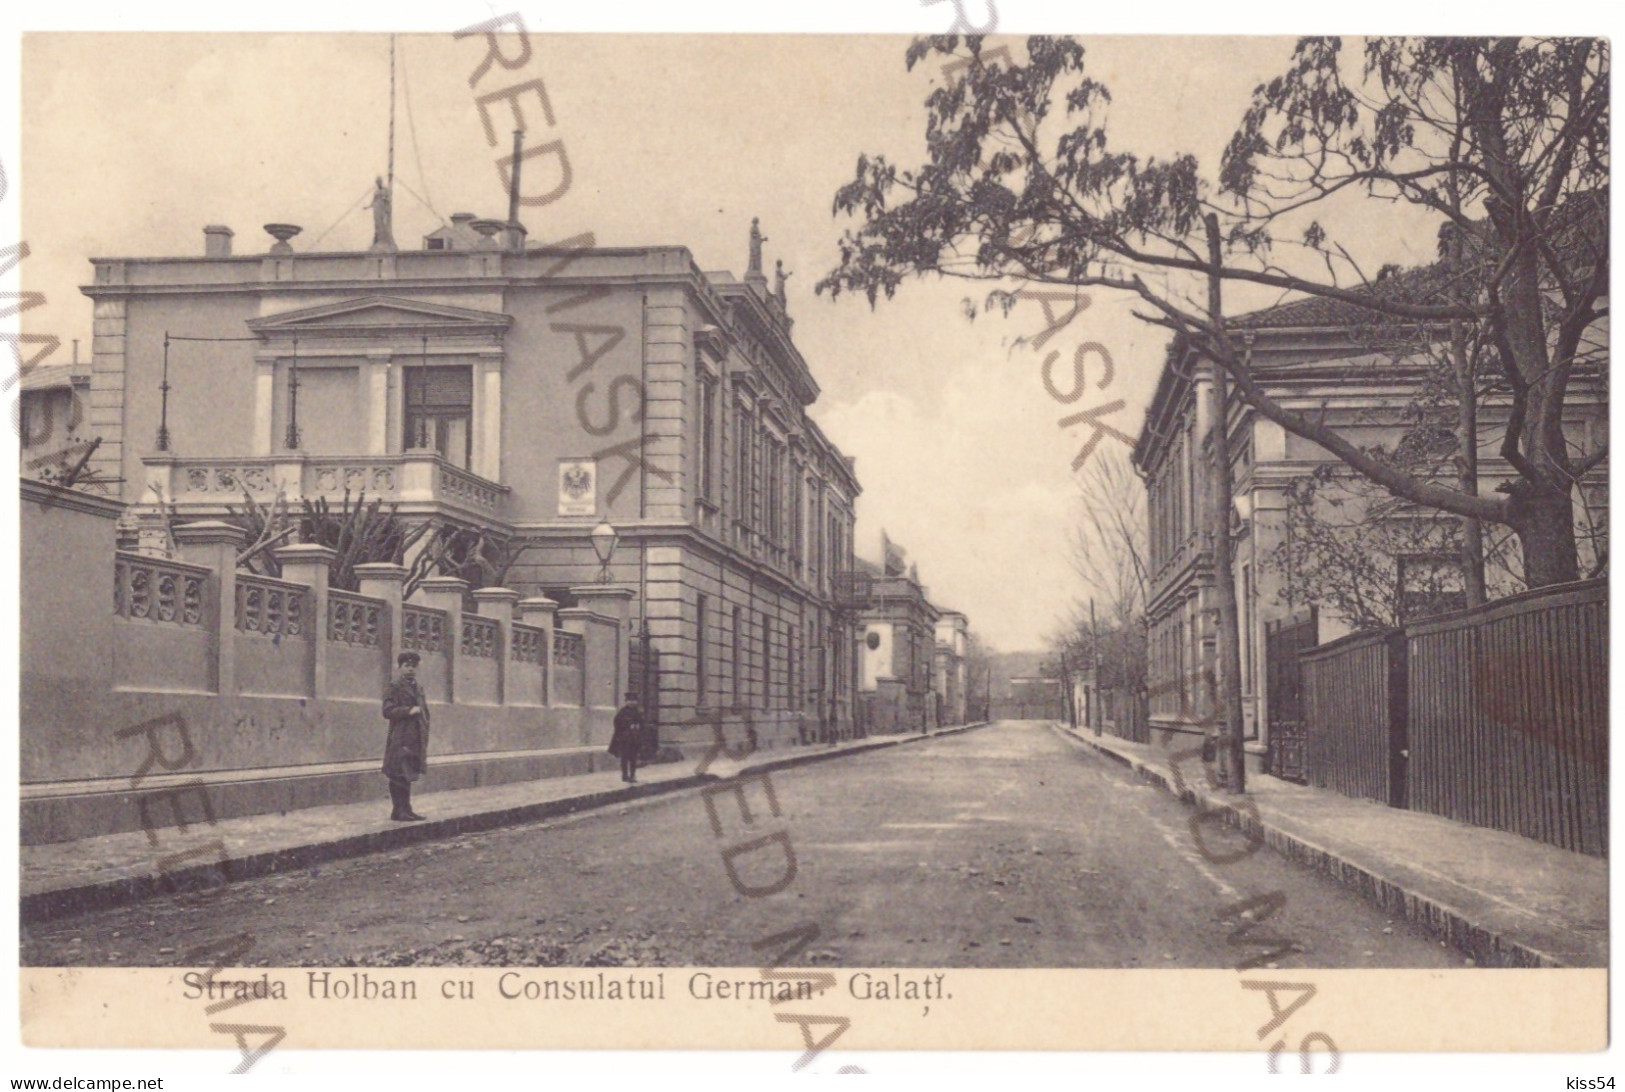 RO 83 - 21118 GALATI, German Consulate, Romania - Old Postcard - Unused - Romania